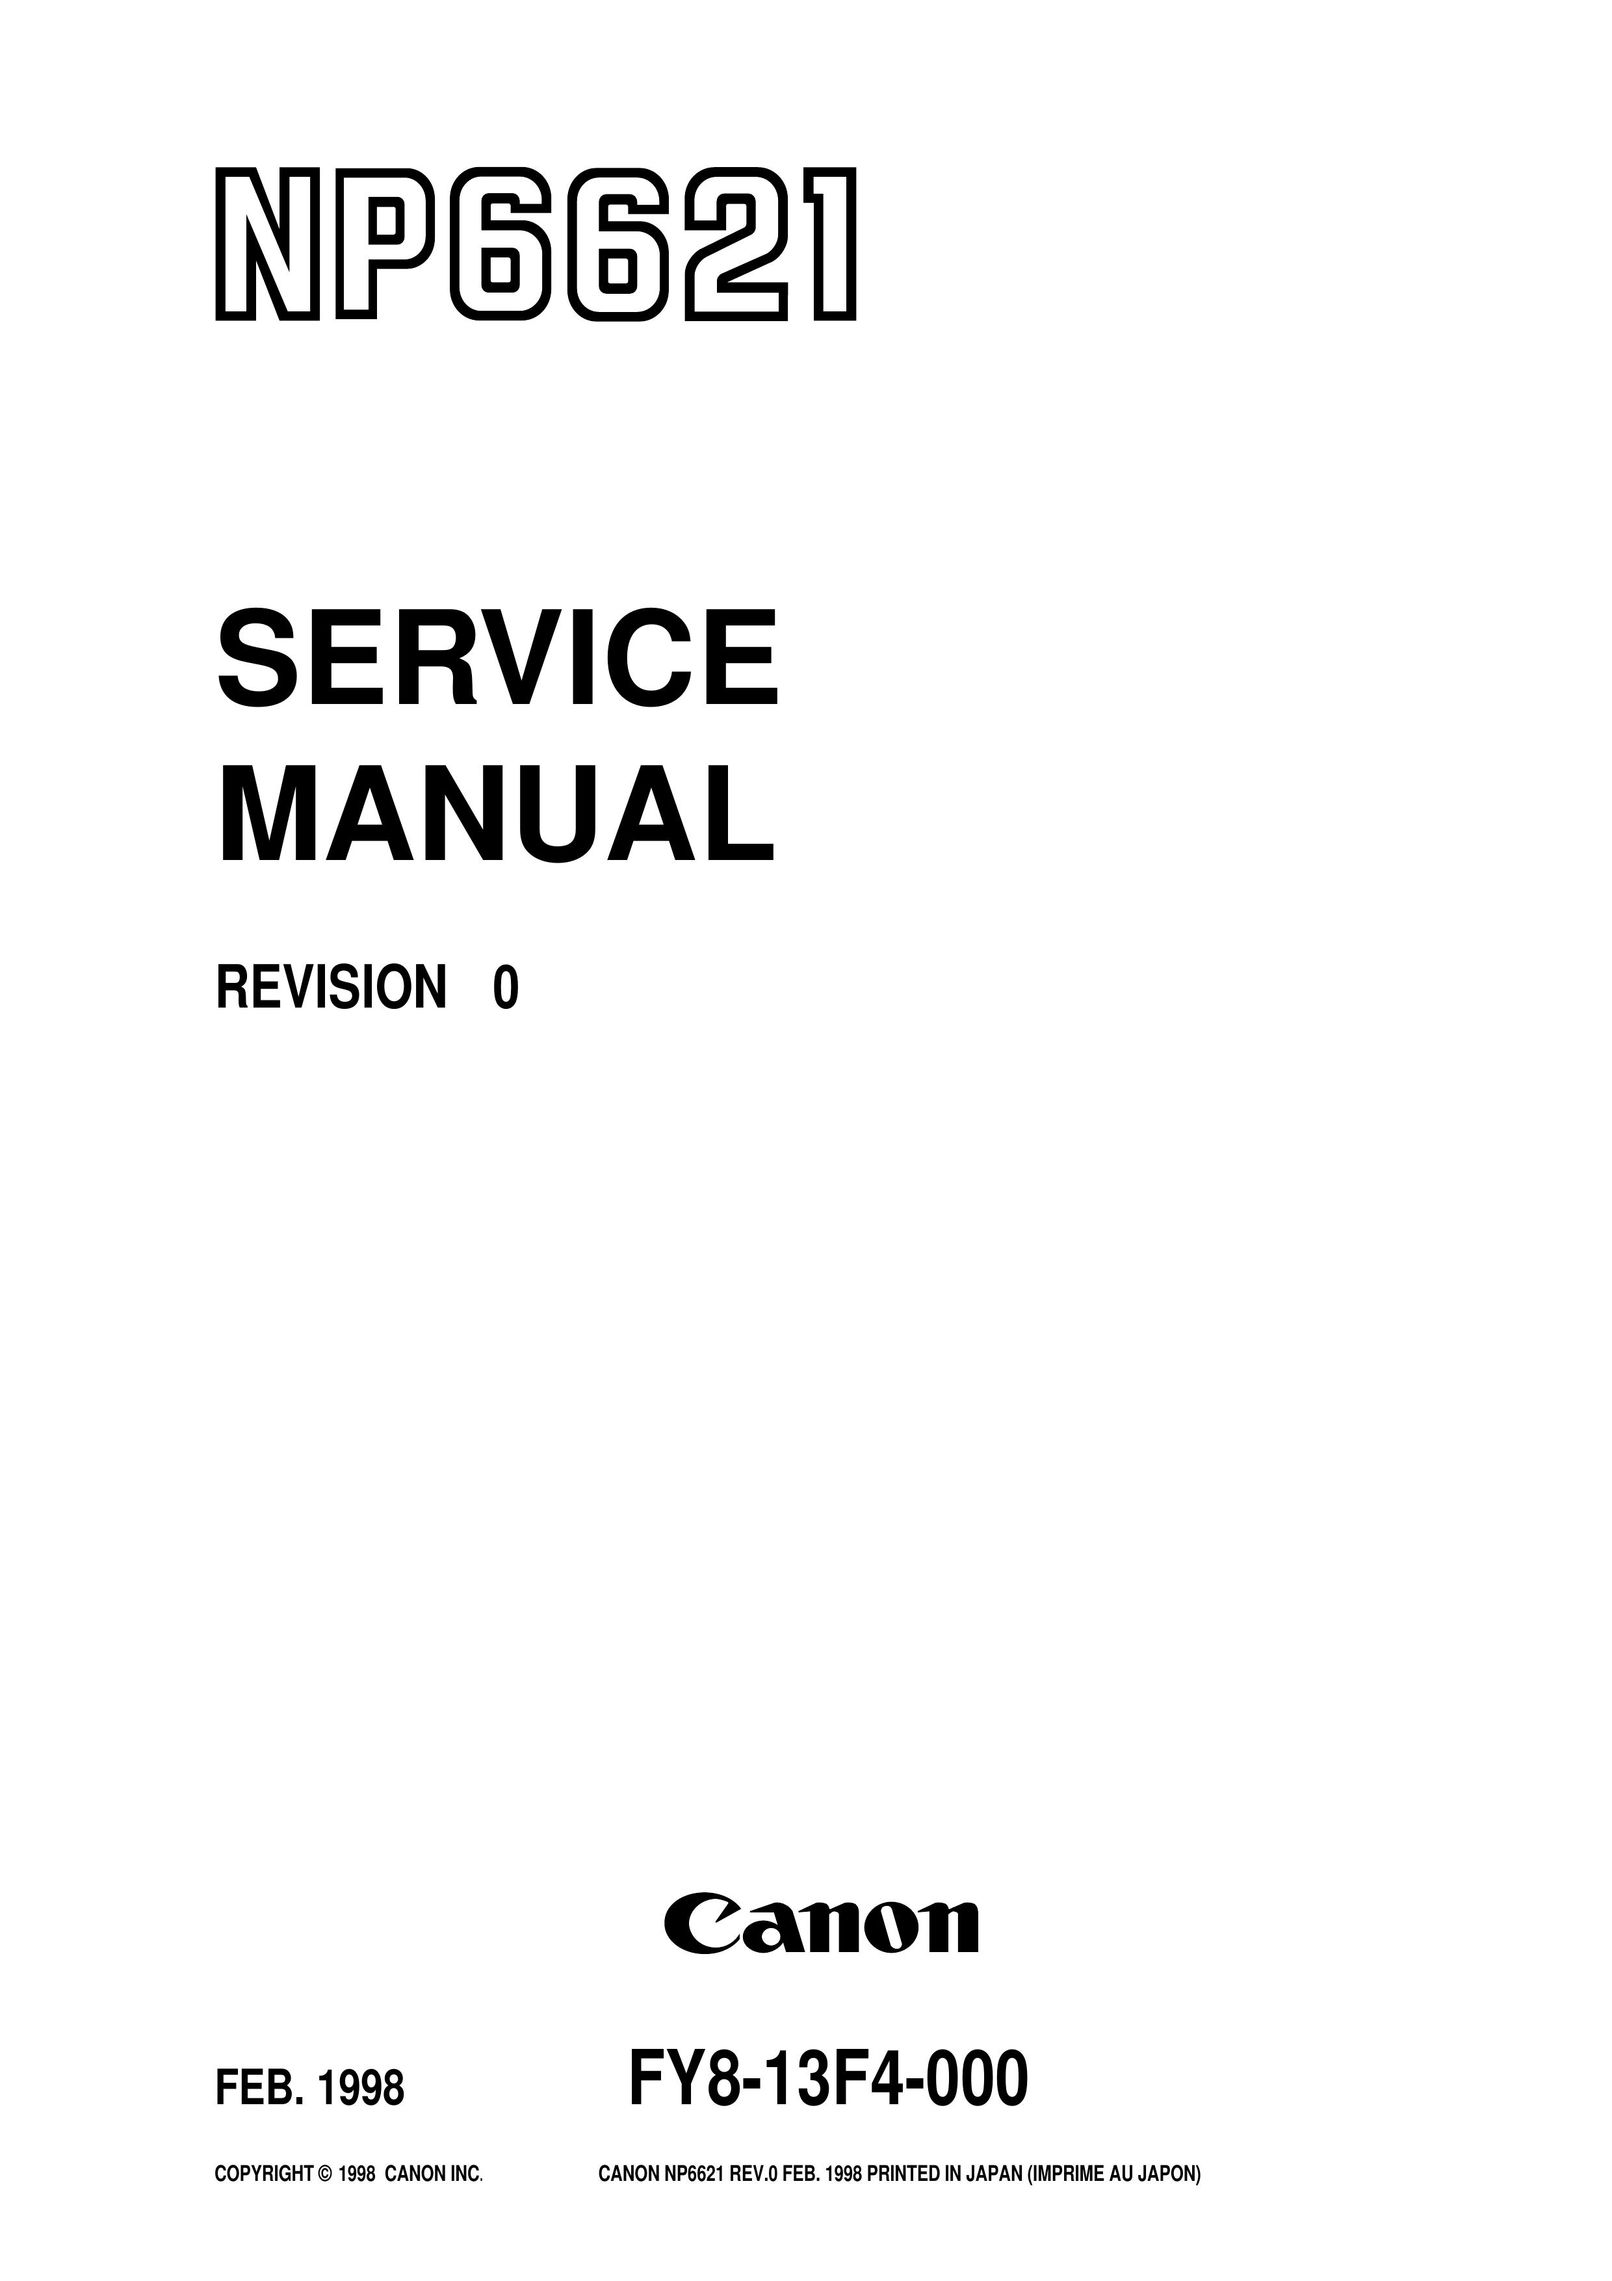 Canon NP6621 Copier User Manual